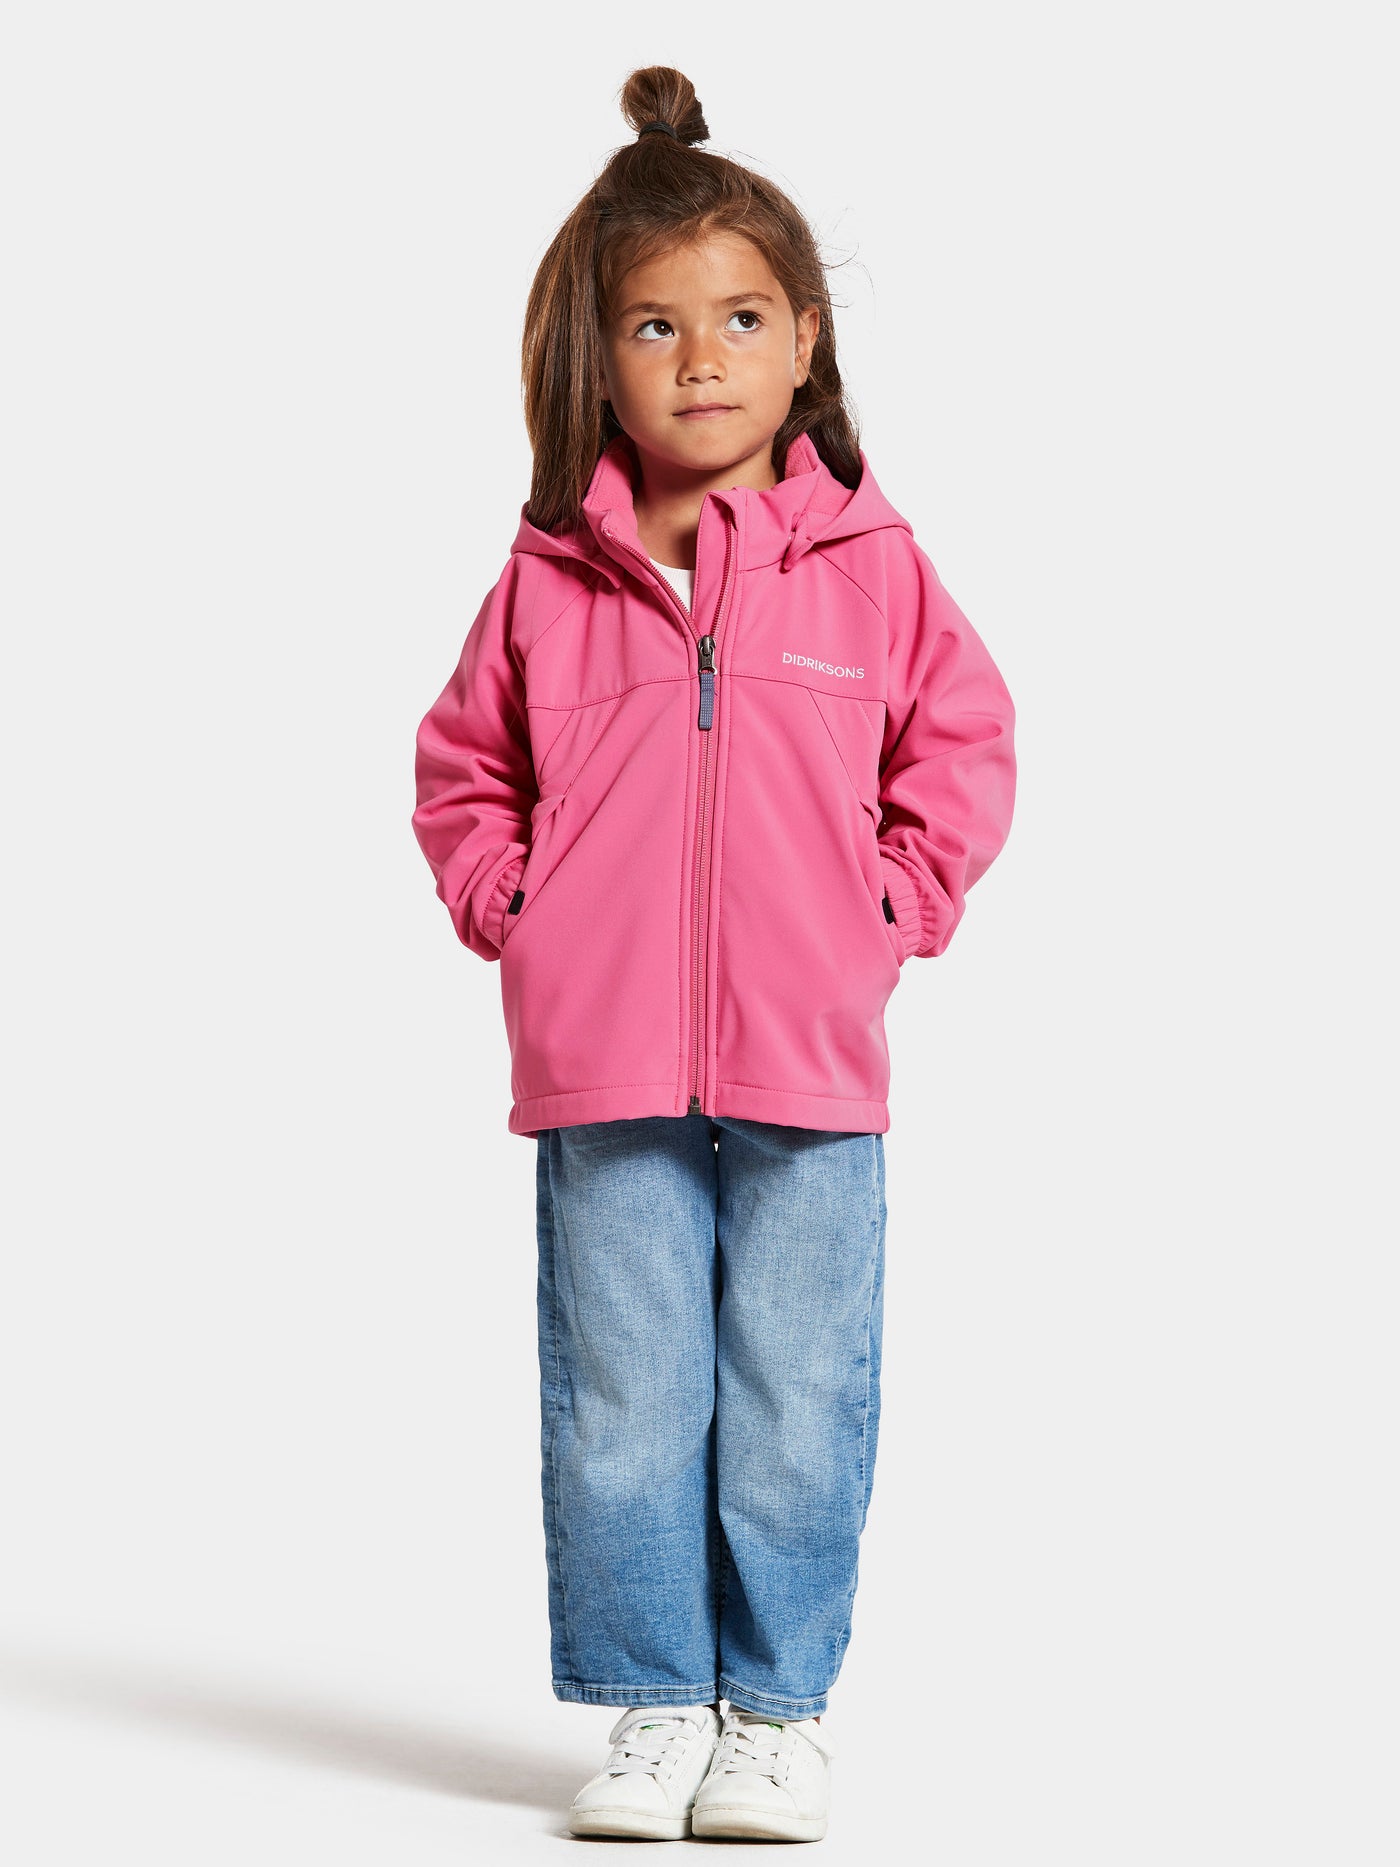 Tytön päällä Didriksonsin Dellen lasten pinkki softshell-takki edestä kuvattuna